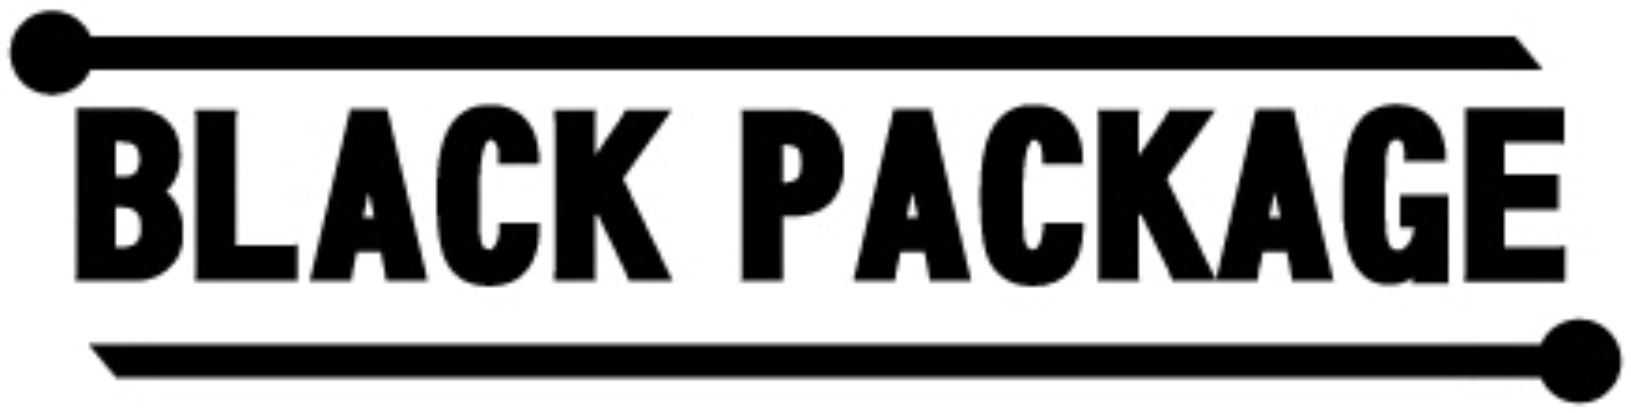 blackpackage